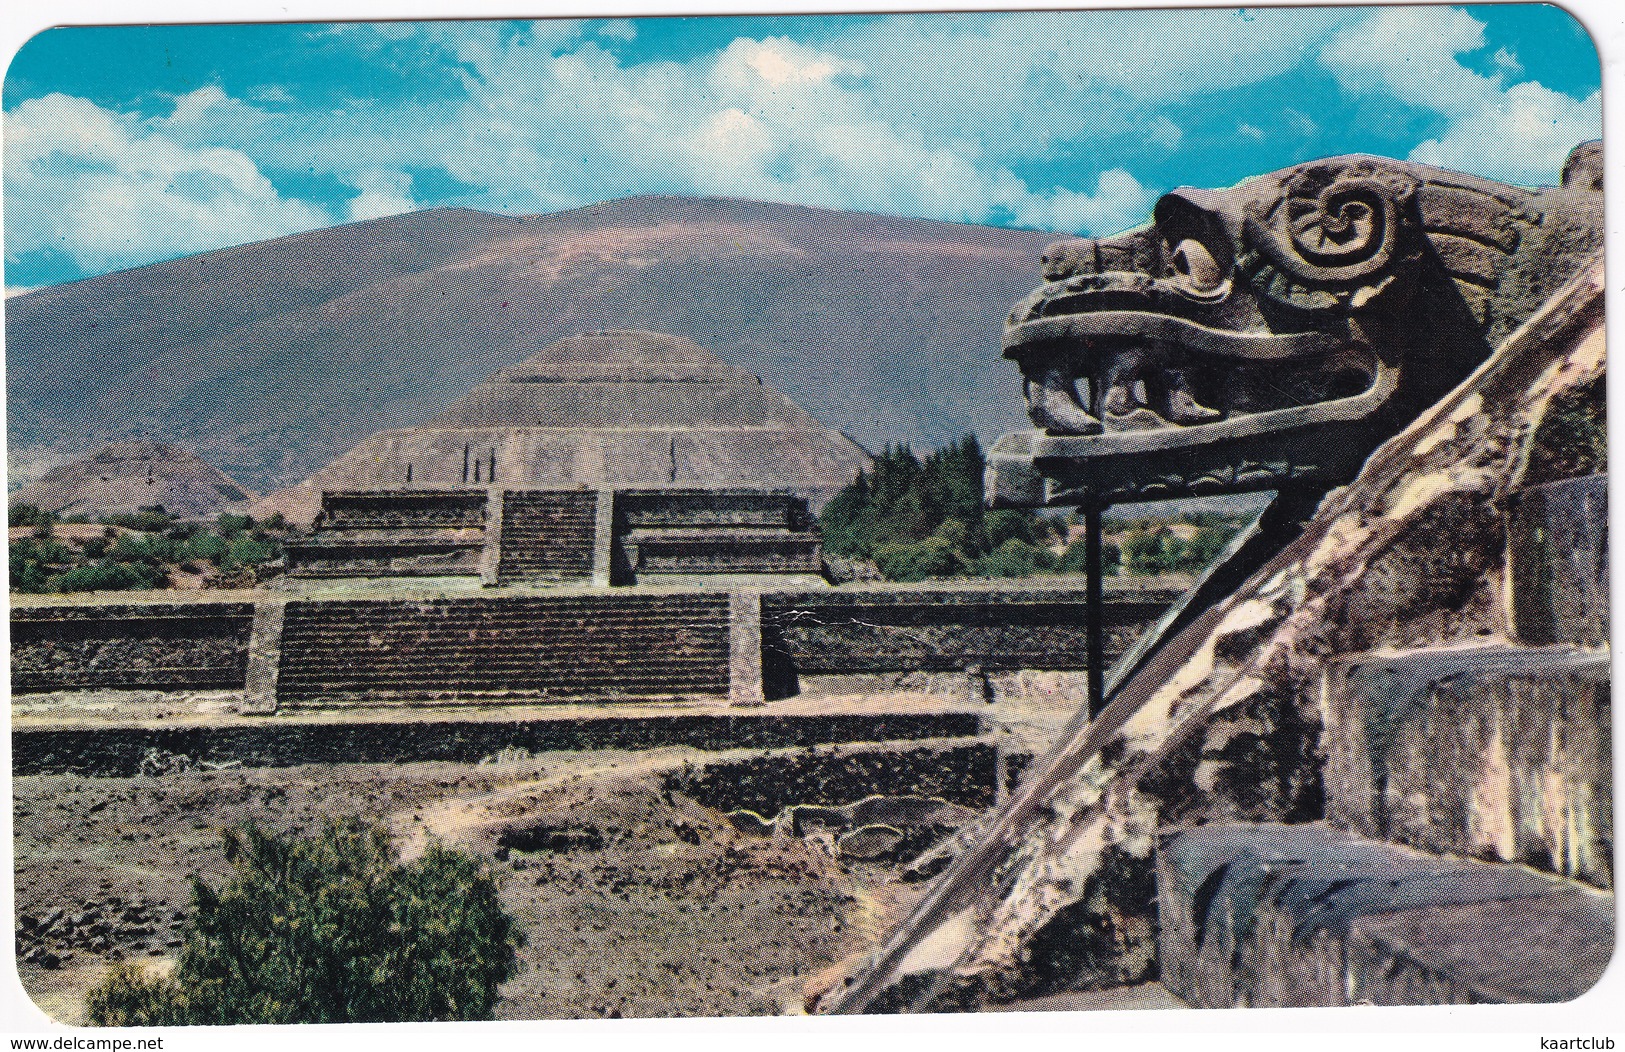 San Juan Teotihuacan - 'Temple Of Quetzalcoatl' - Pyramids Sun And Moon - Zona Arqueologica - (Mexico) - Mexico